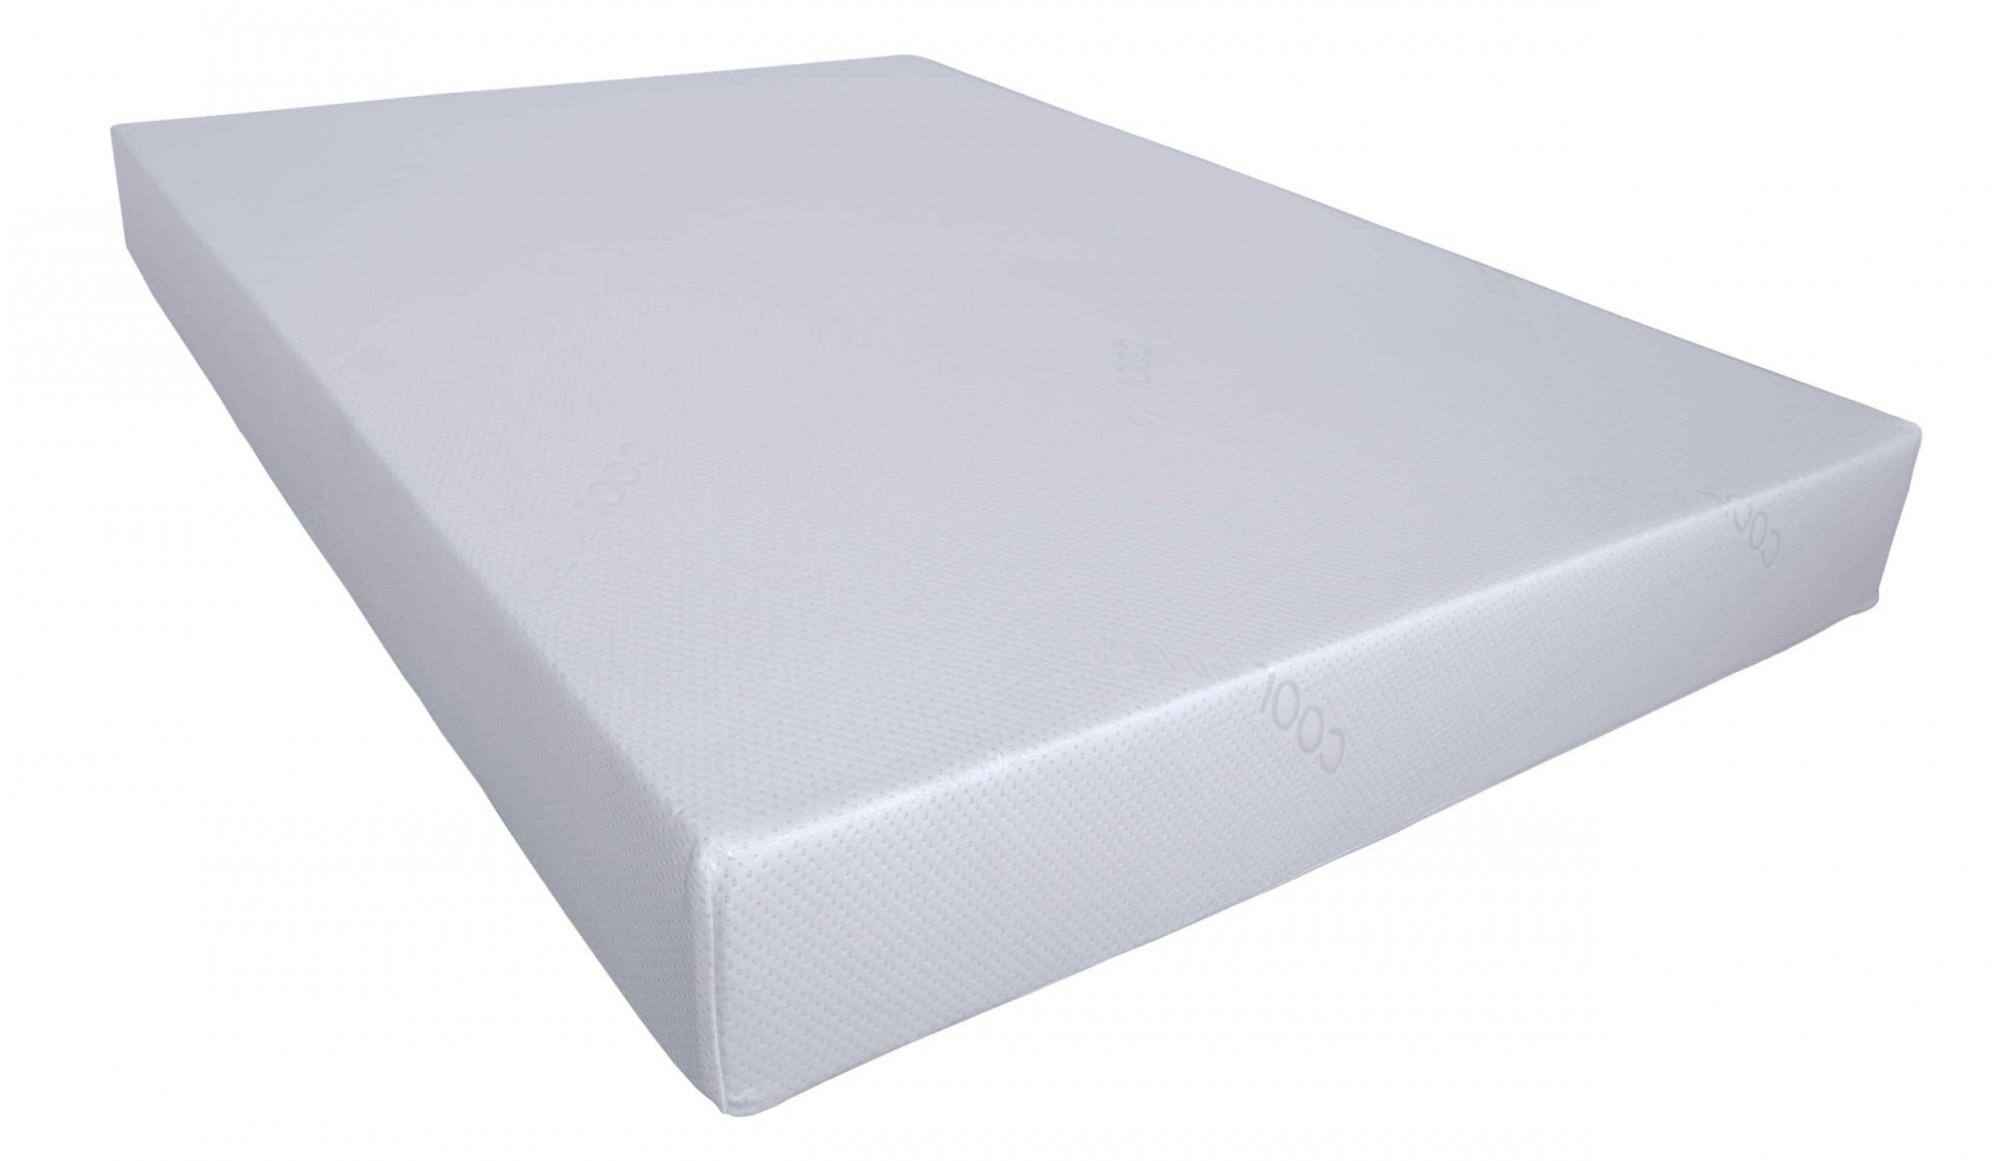 foam mattress 10cm thick